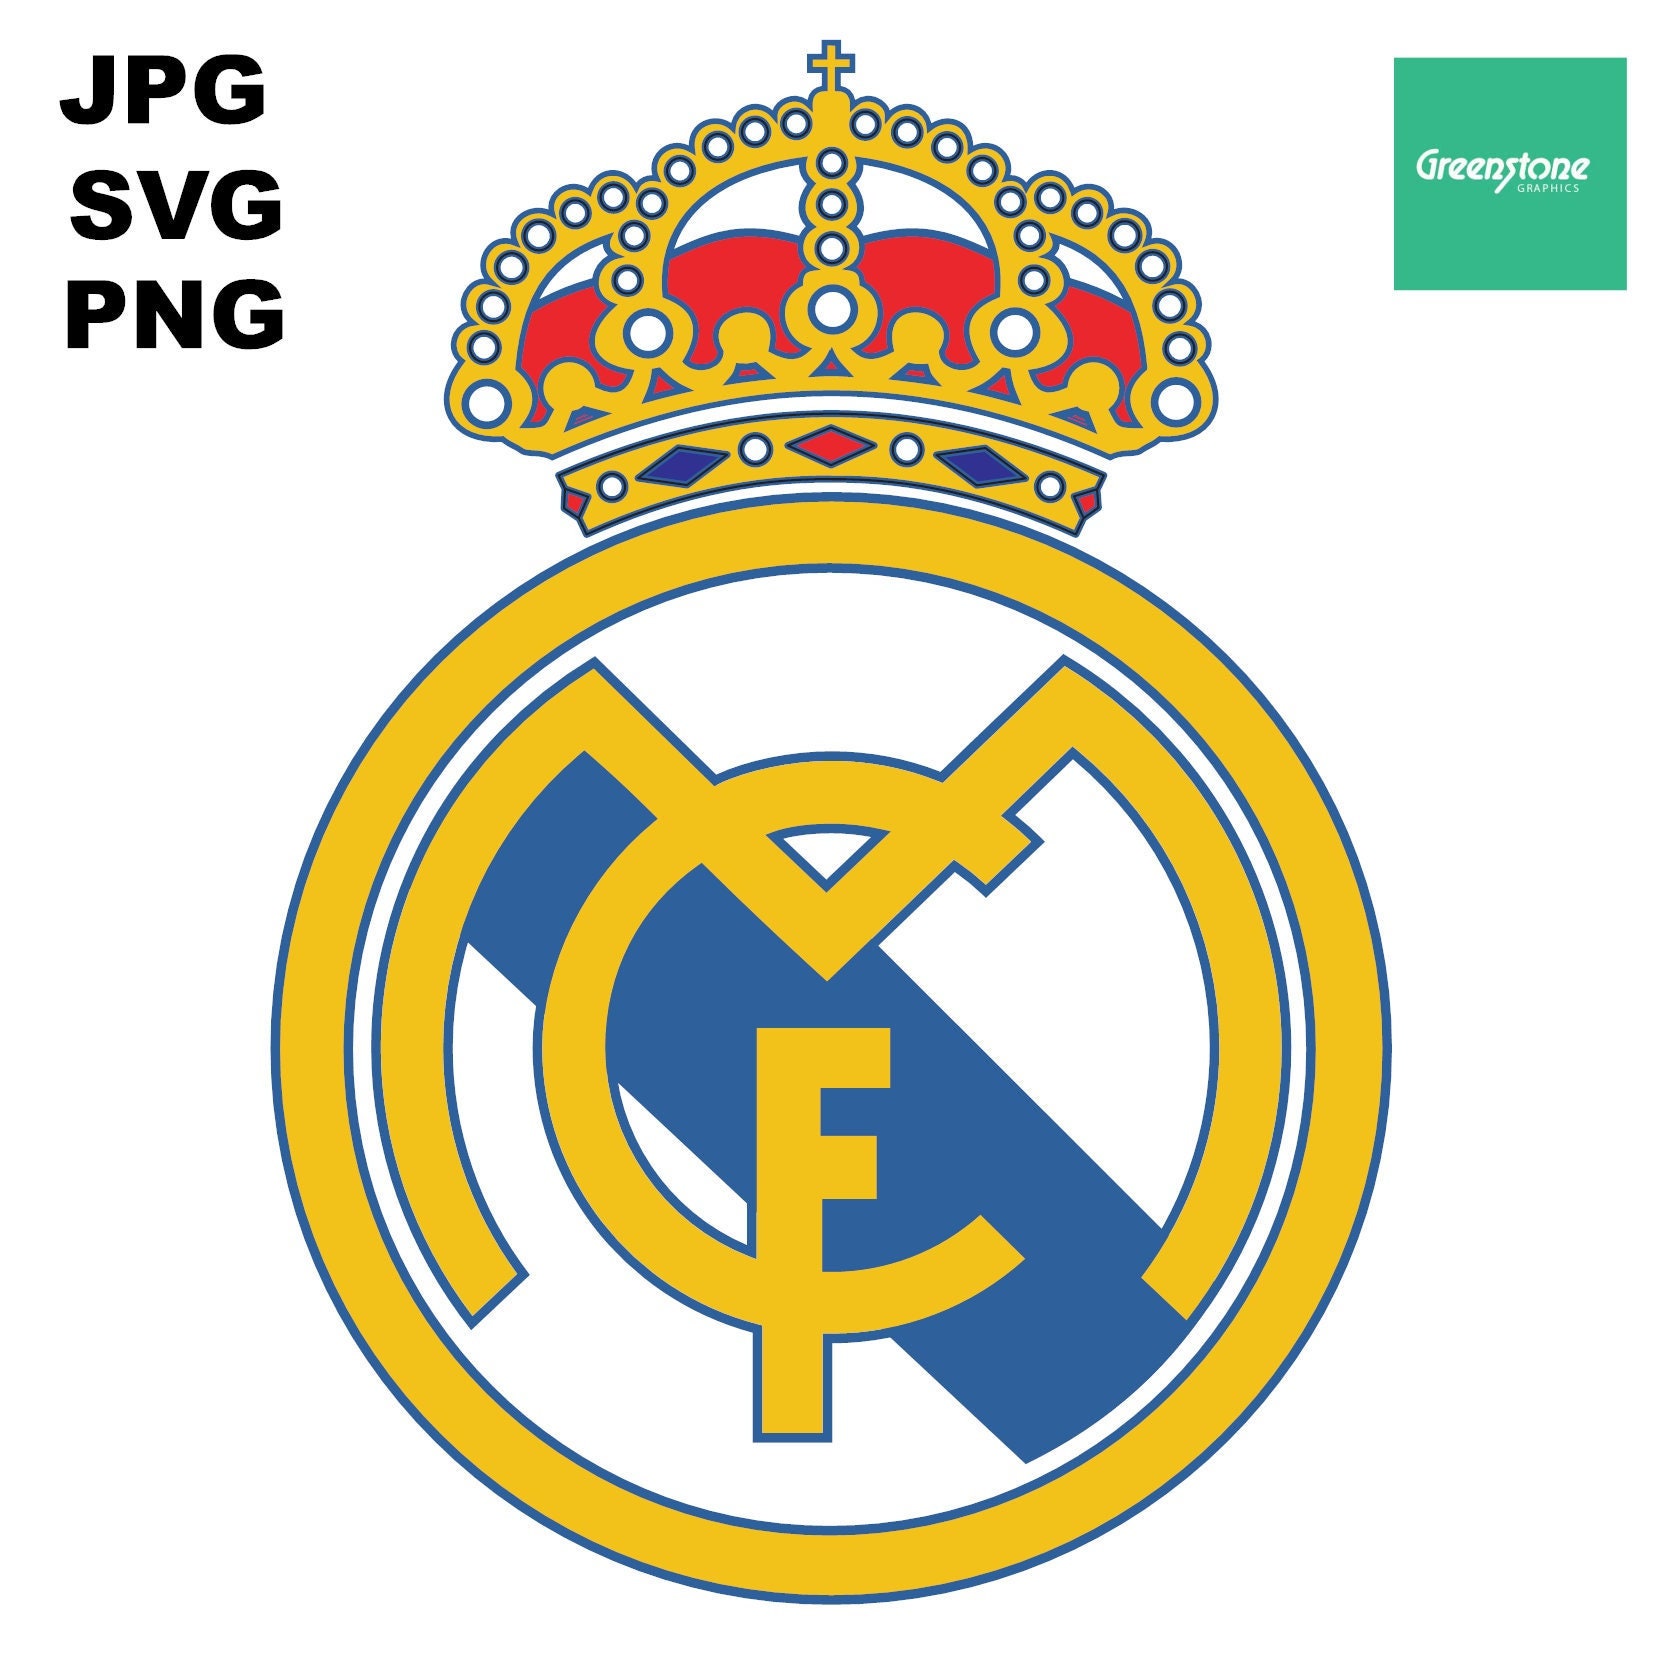 Futbalové suveníry - Real Madrid CF